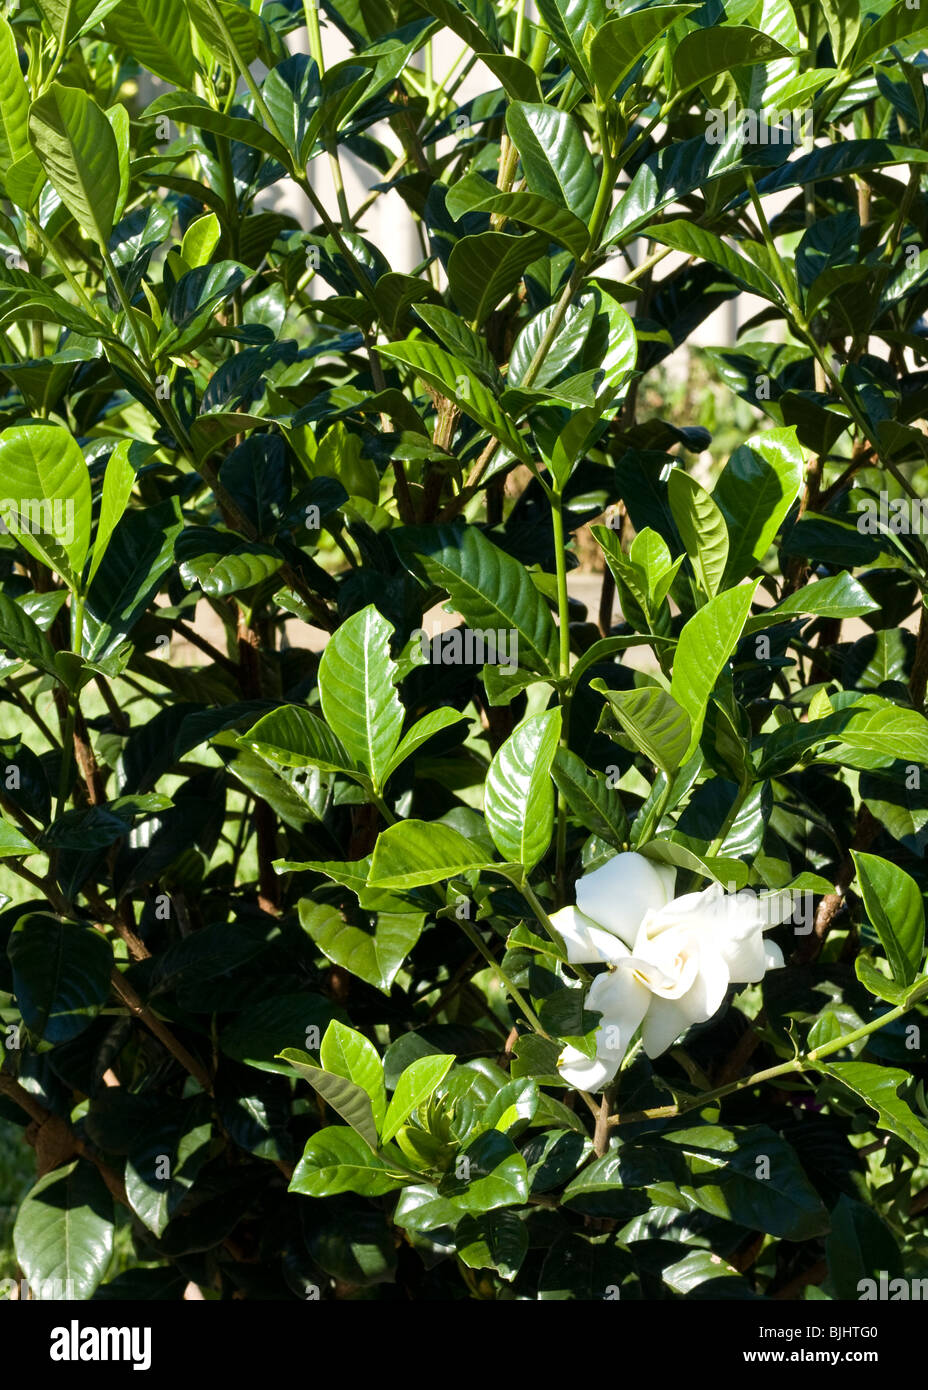 white gardenia with green foliage Stock Photo